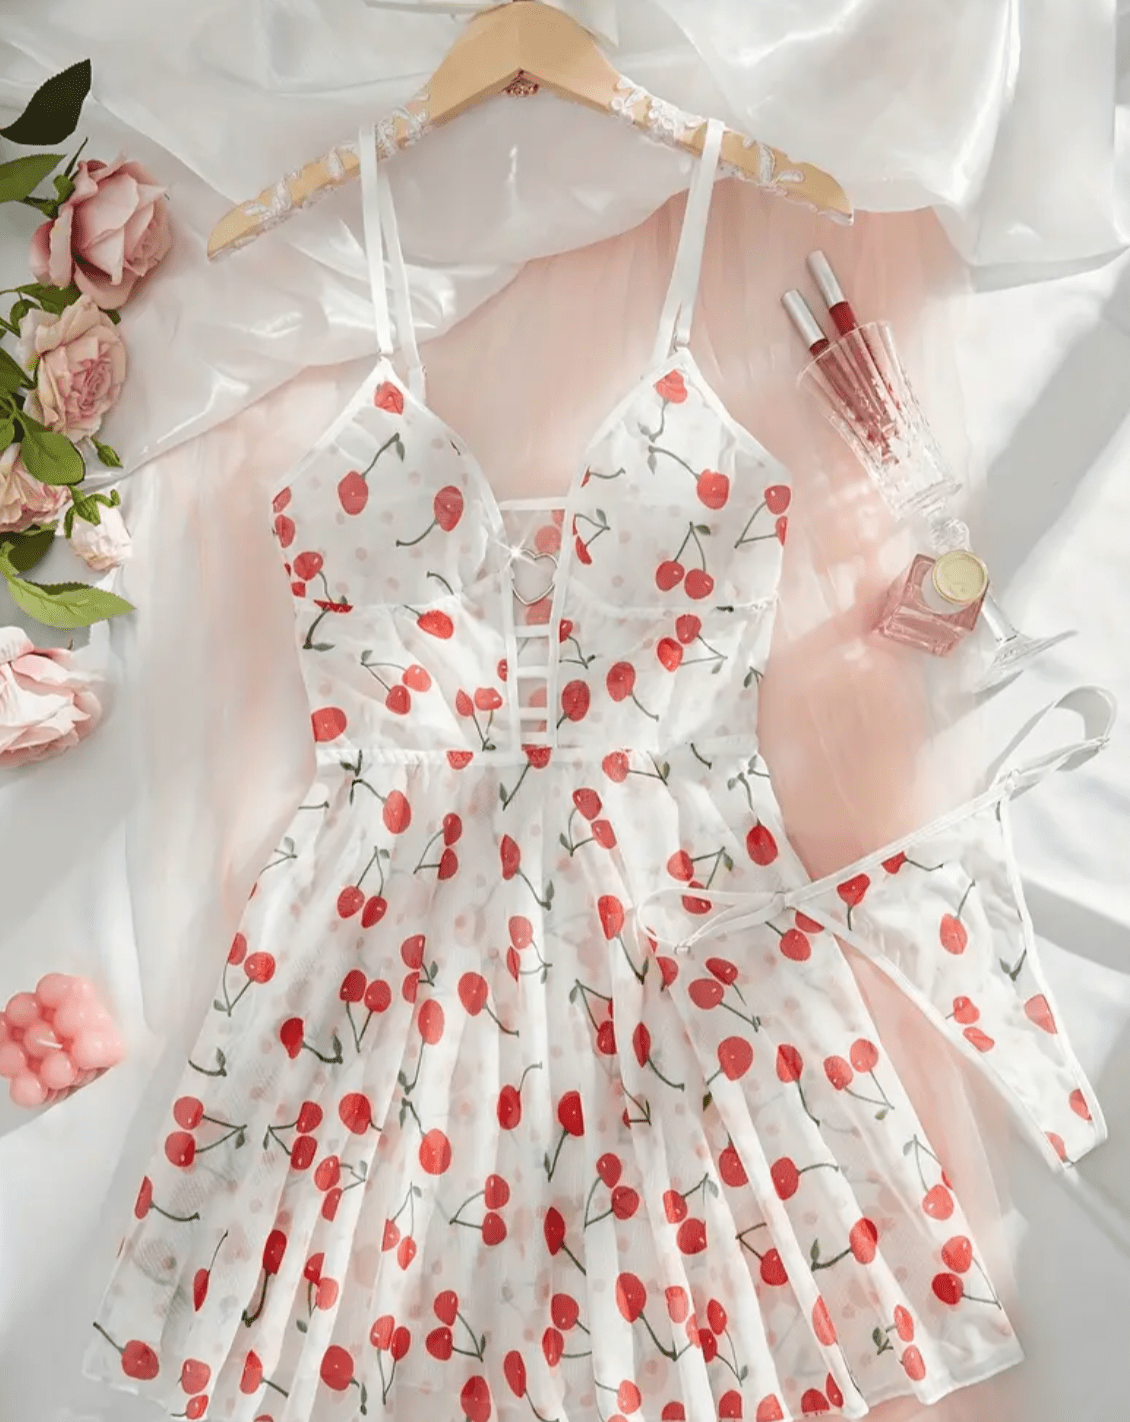 White lingerie slip dress cherry pattern